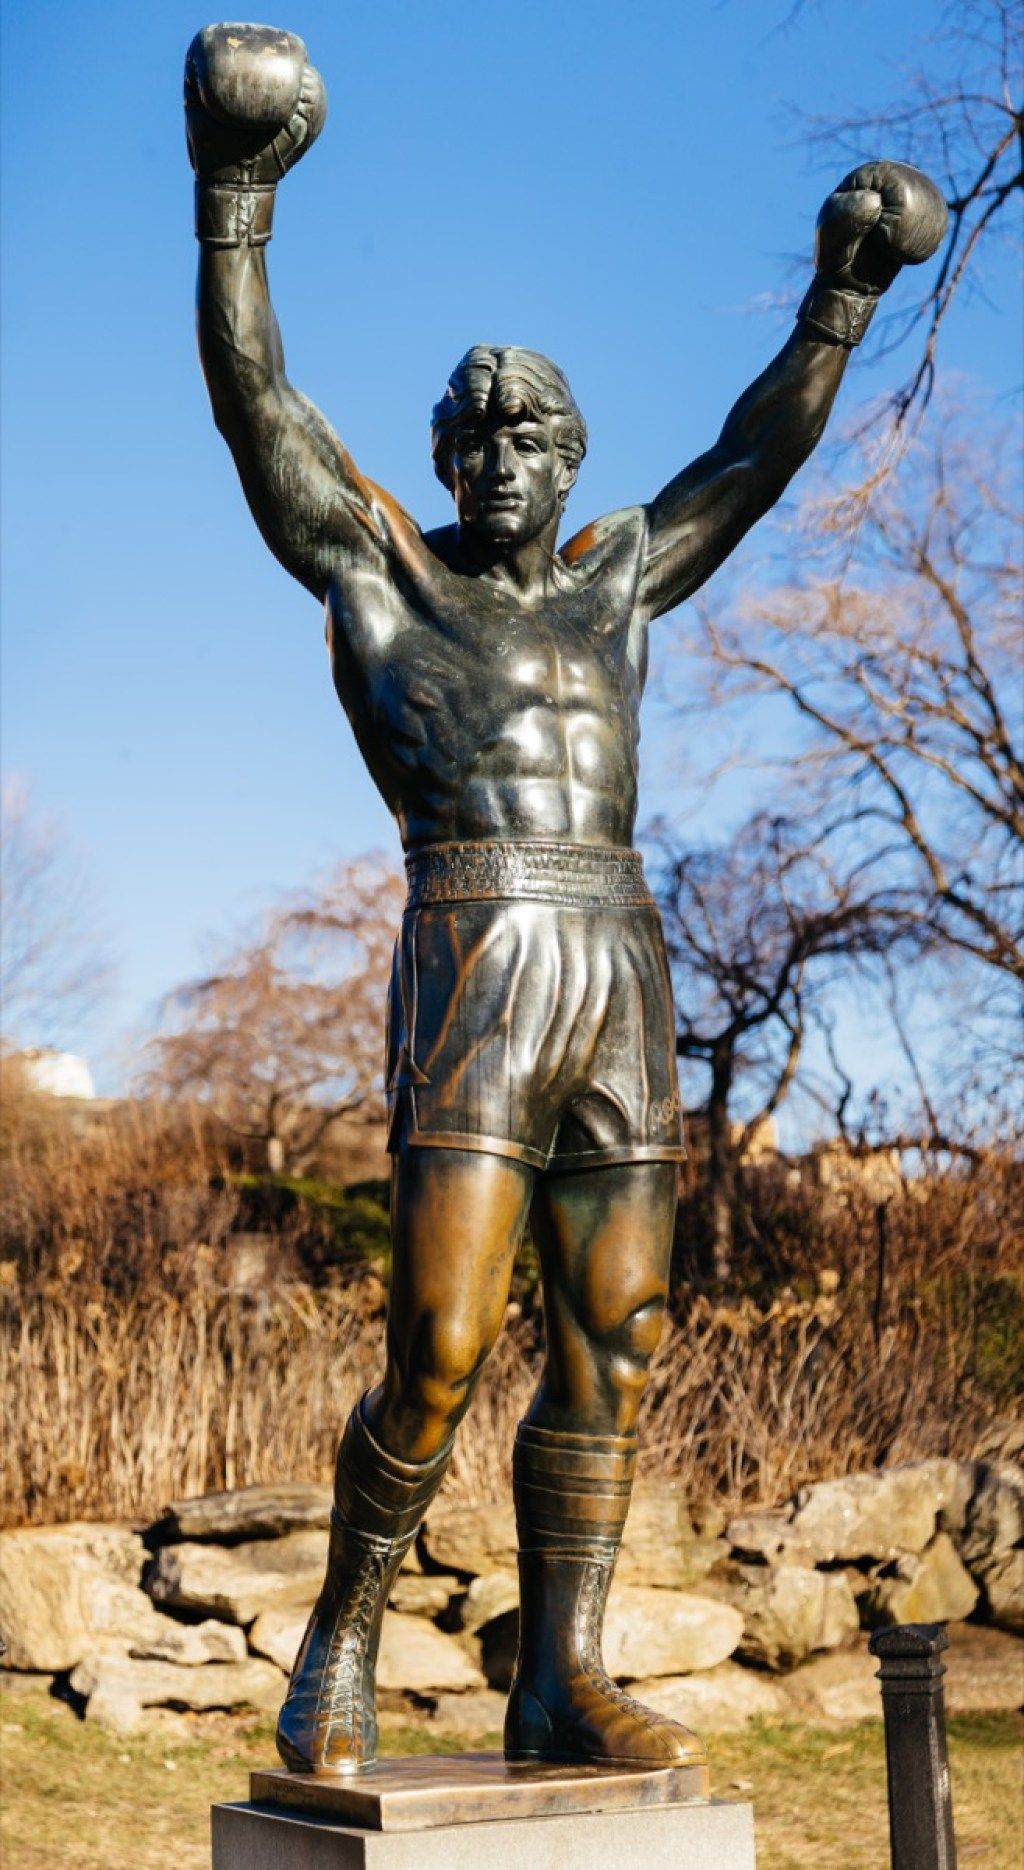 stjenoviti kip balboe philadelphia pennsylvania poznati državni kipovi